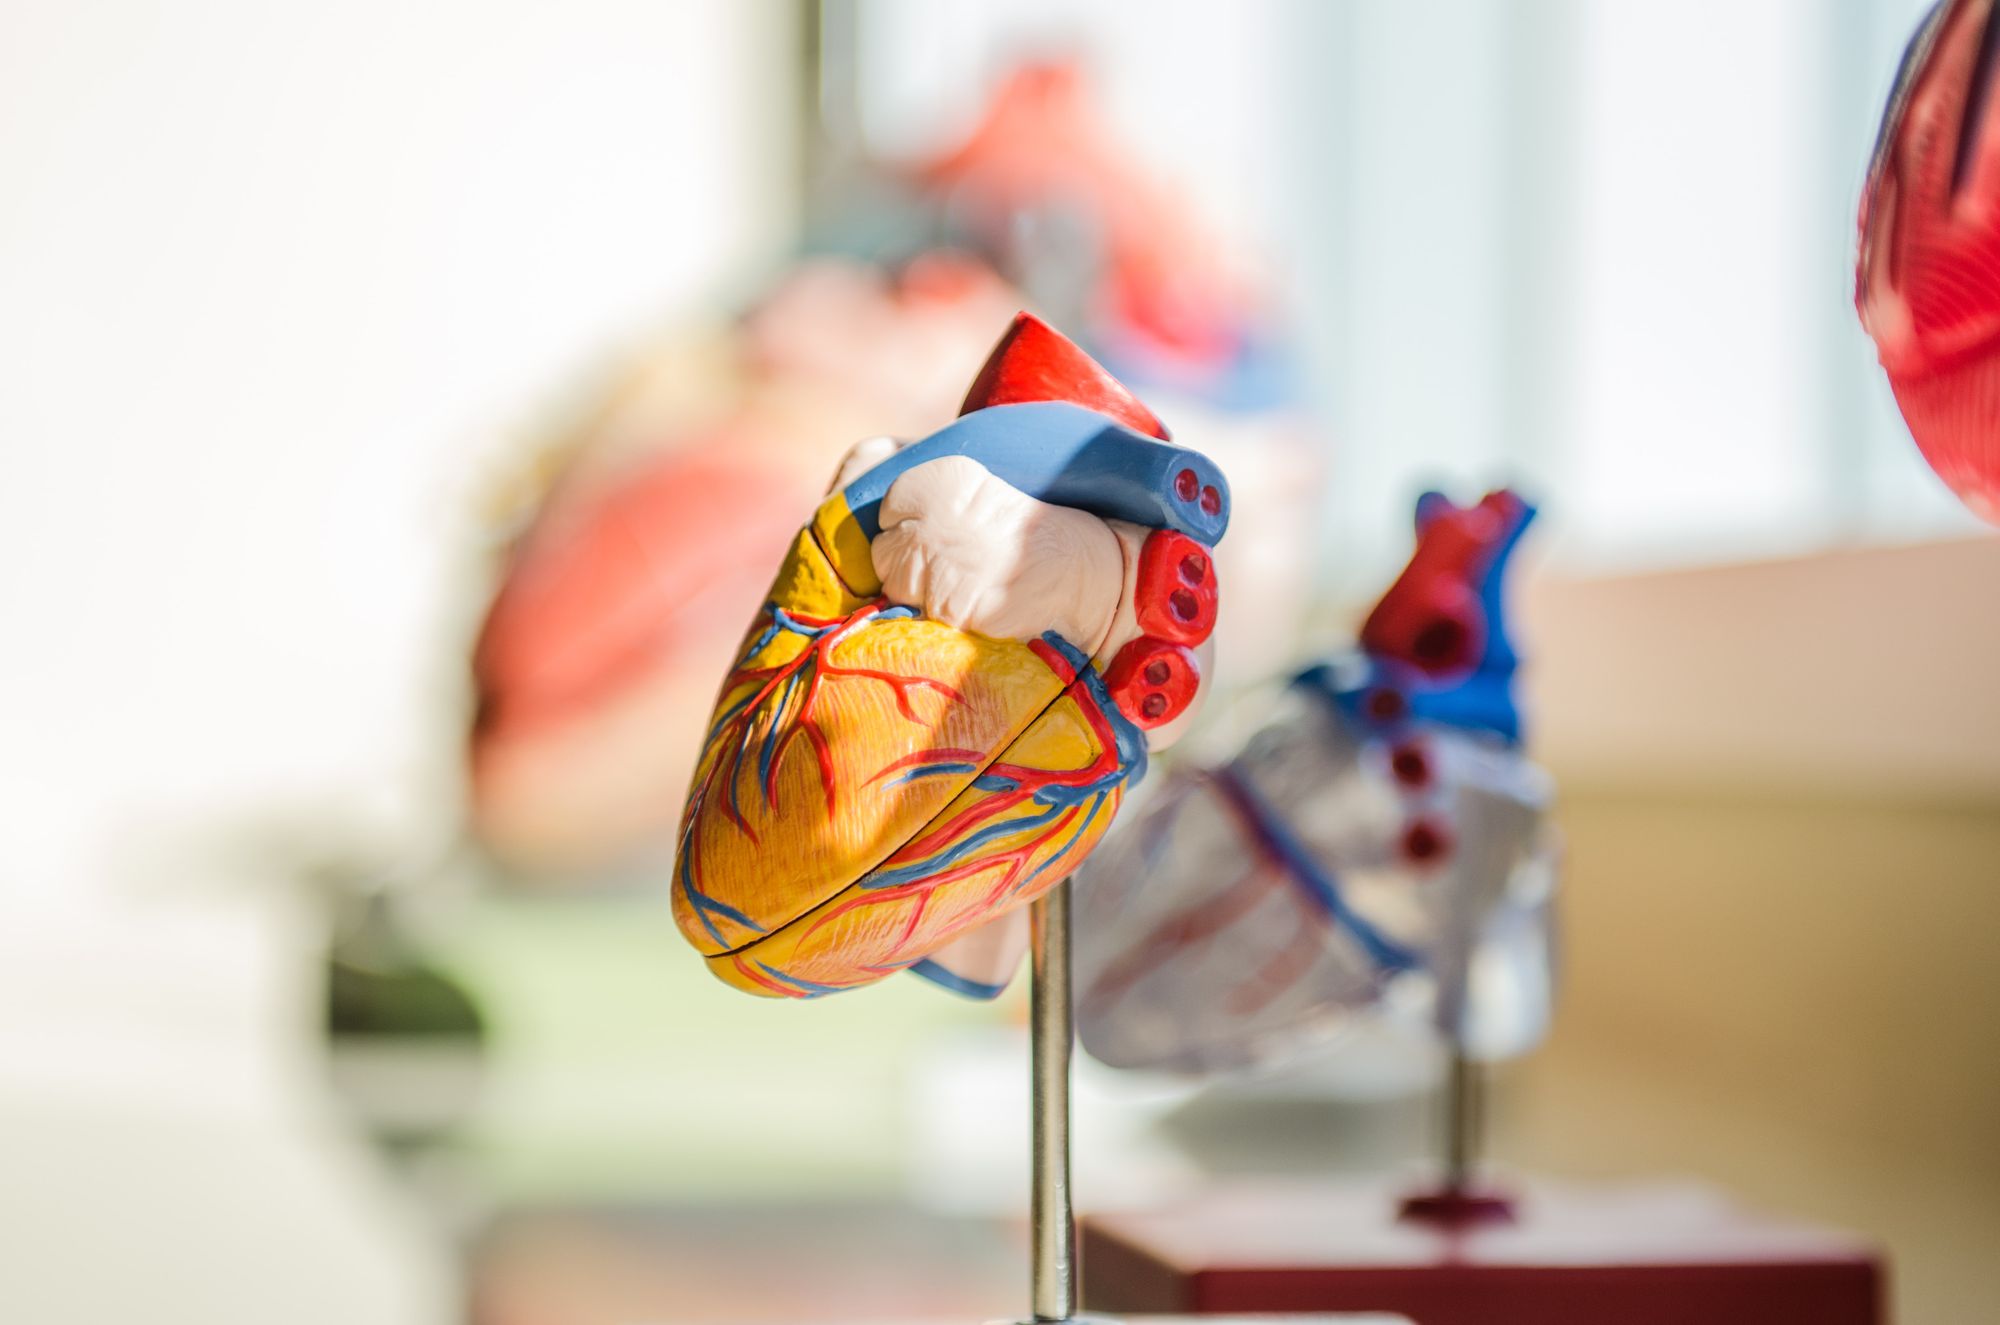 Dánským vědcům se podařilo objasnit podstatu náhlých srdečních příhod